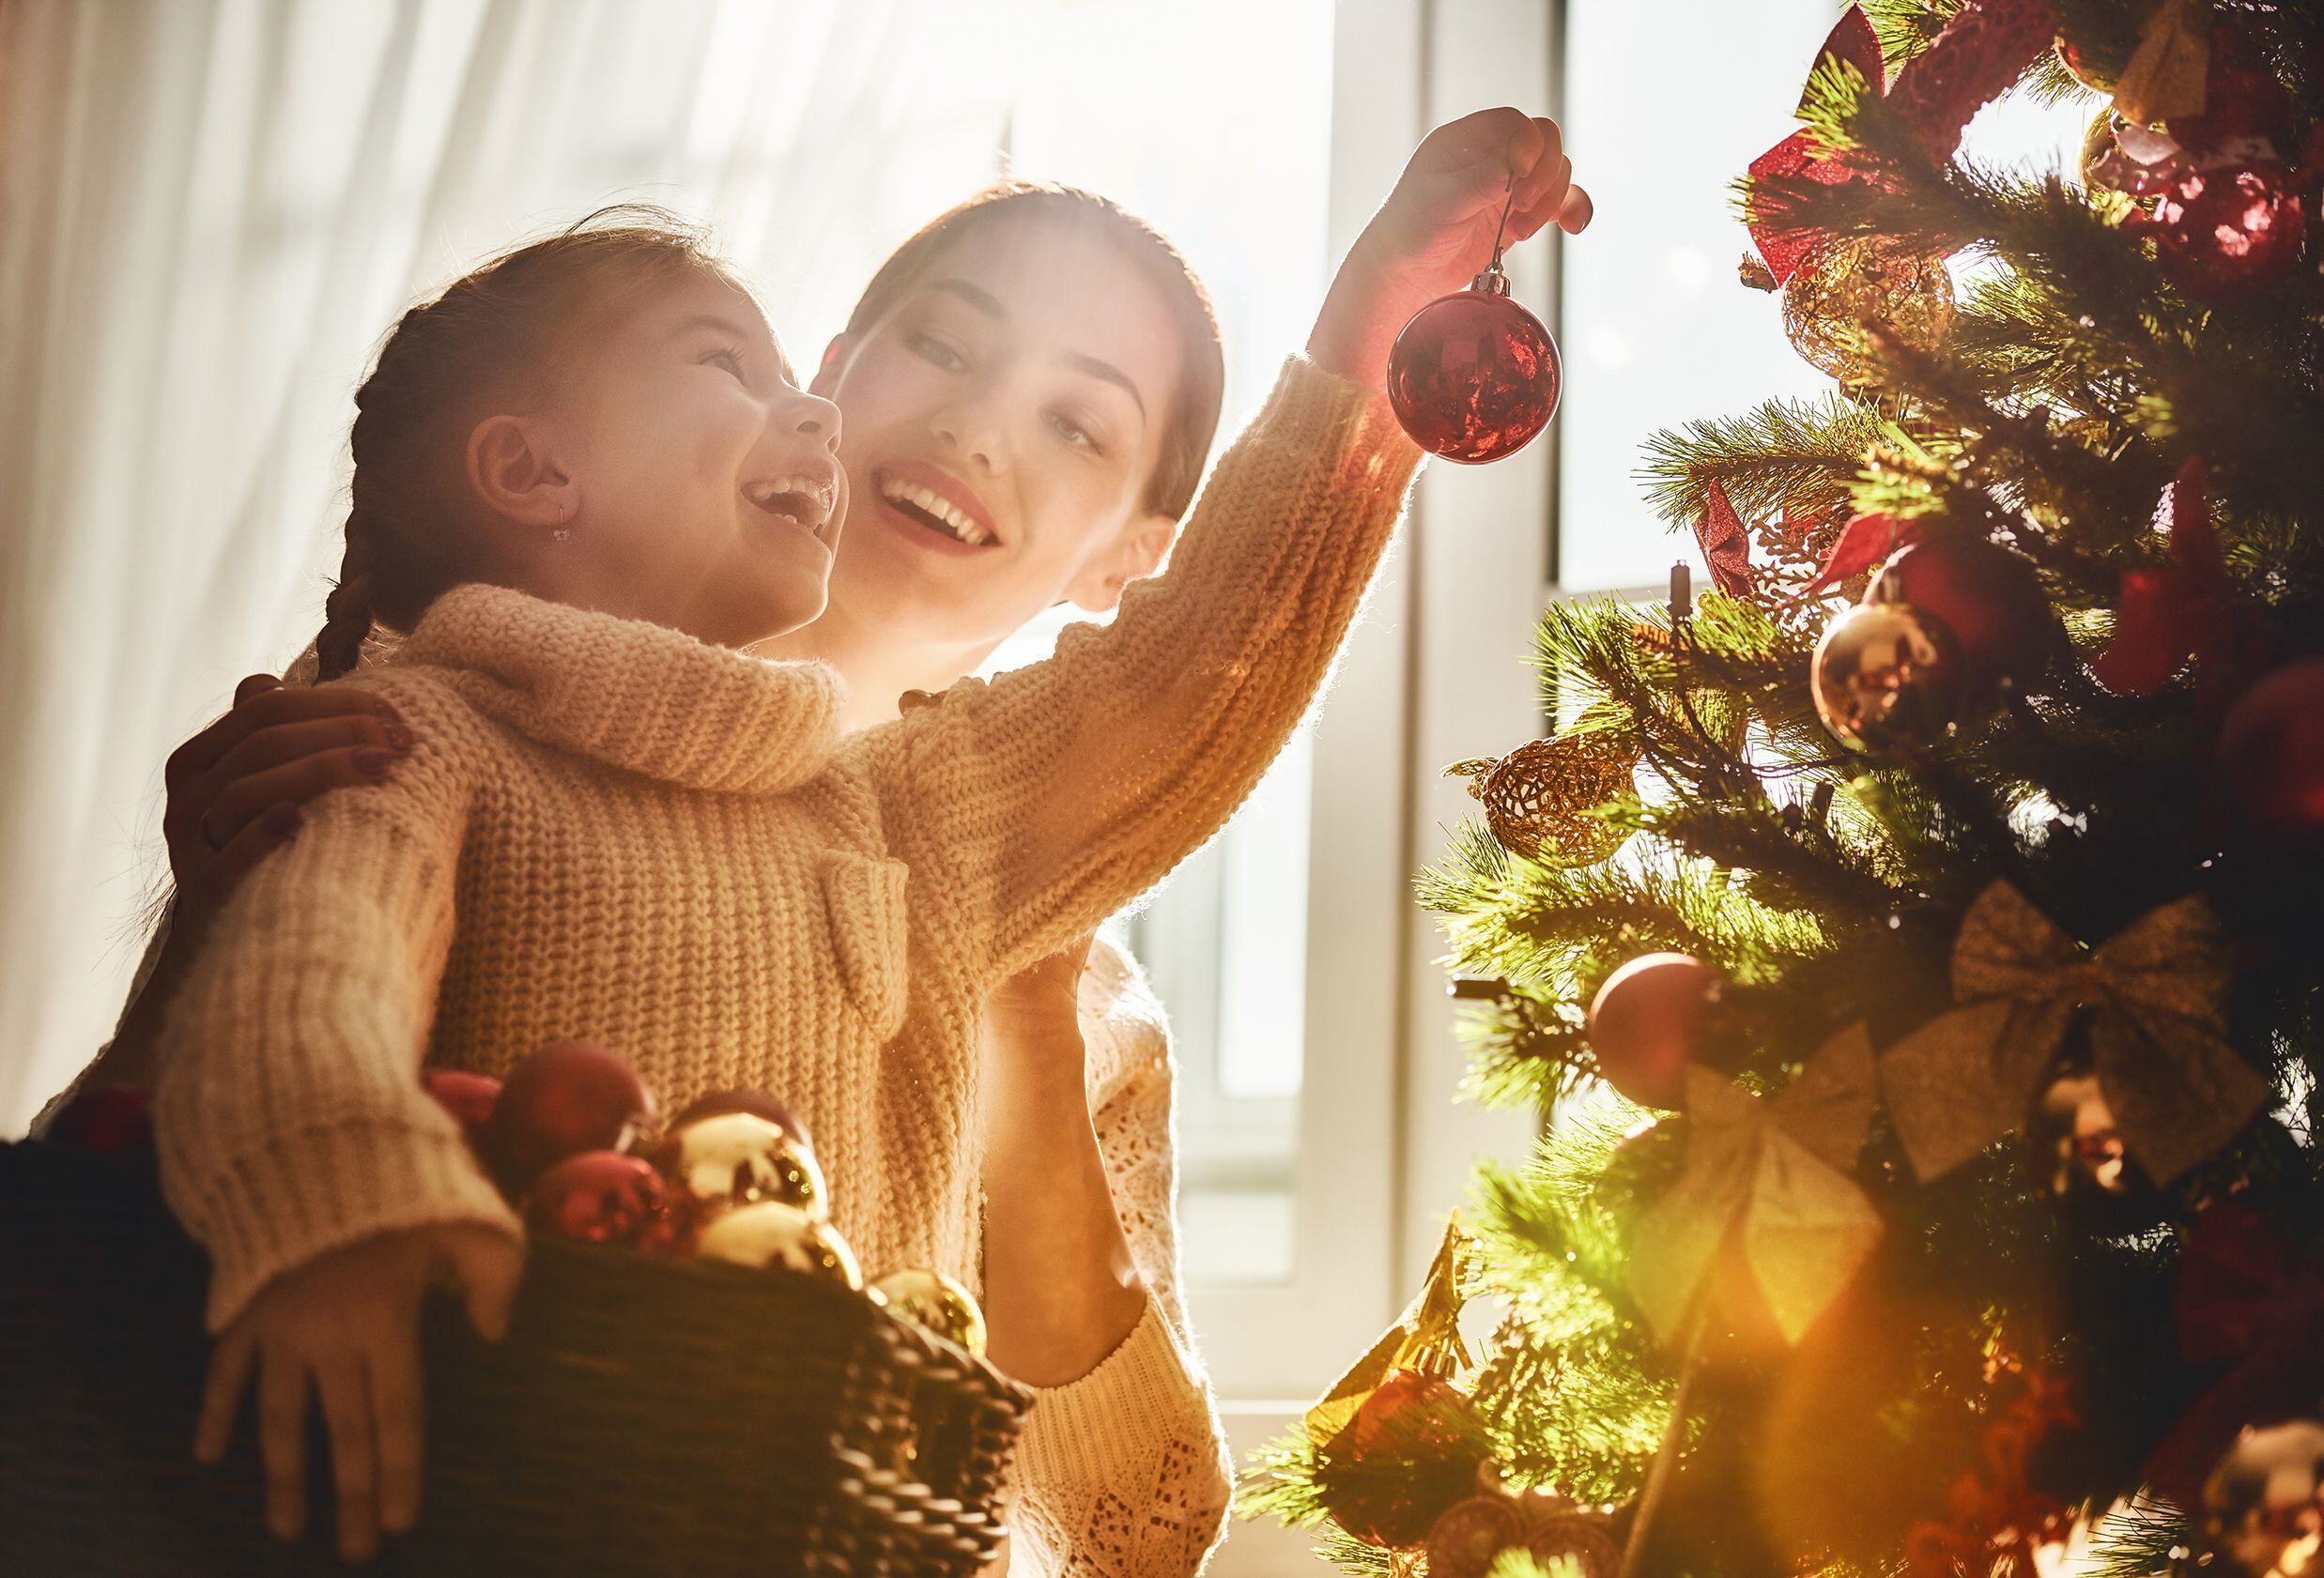 Los adornos navideños de este año tiene un toque de distinción. Foto: Shutterstock.